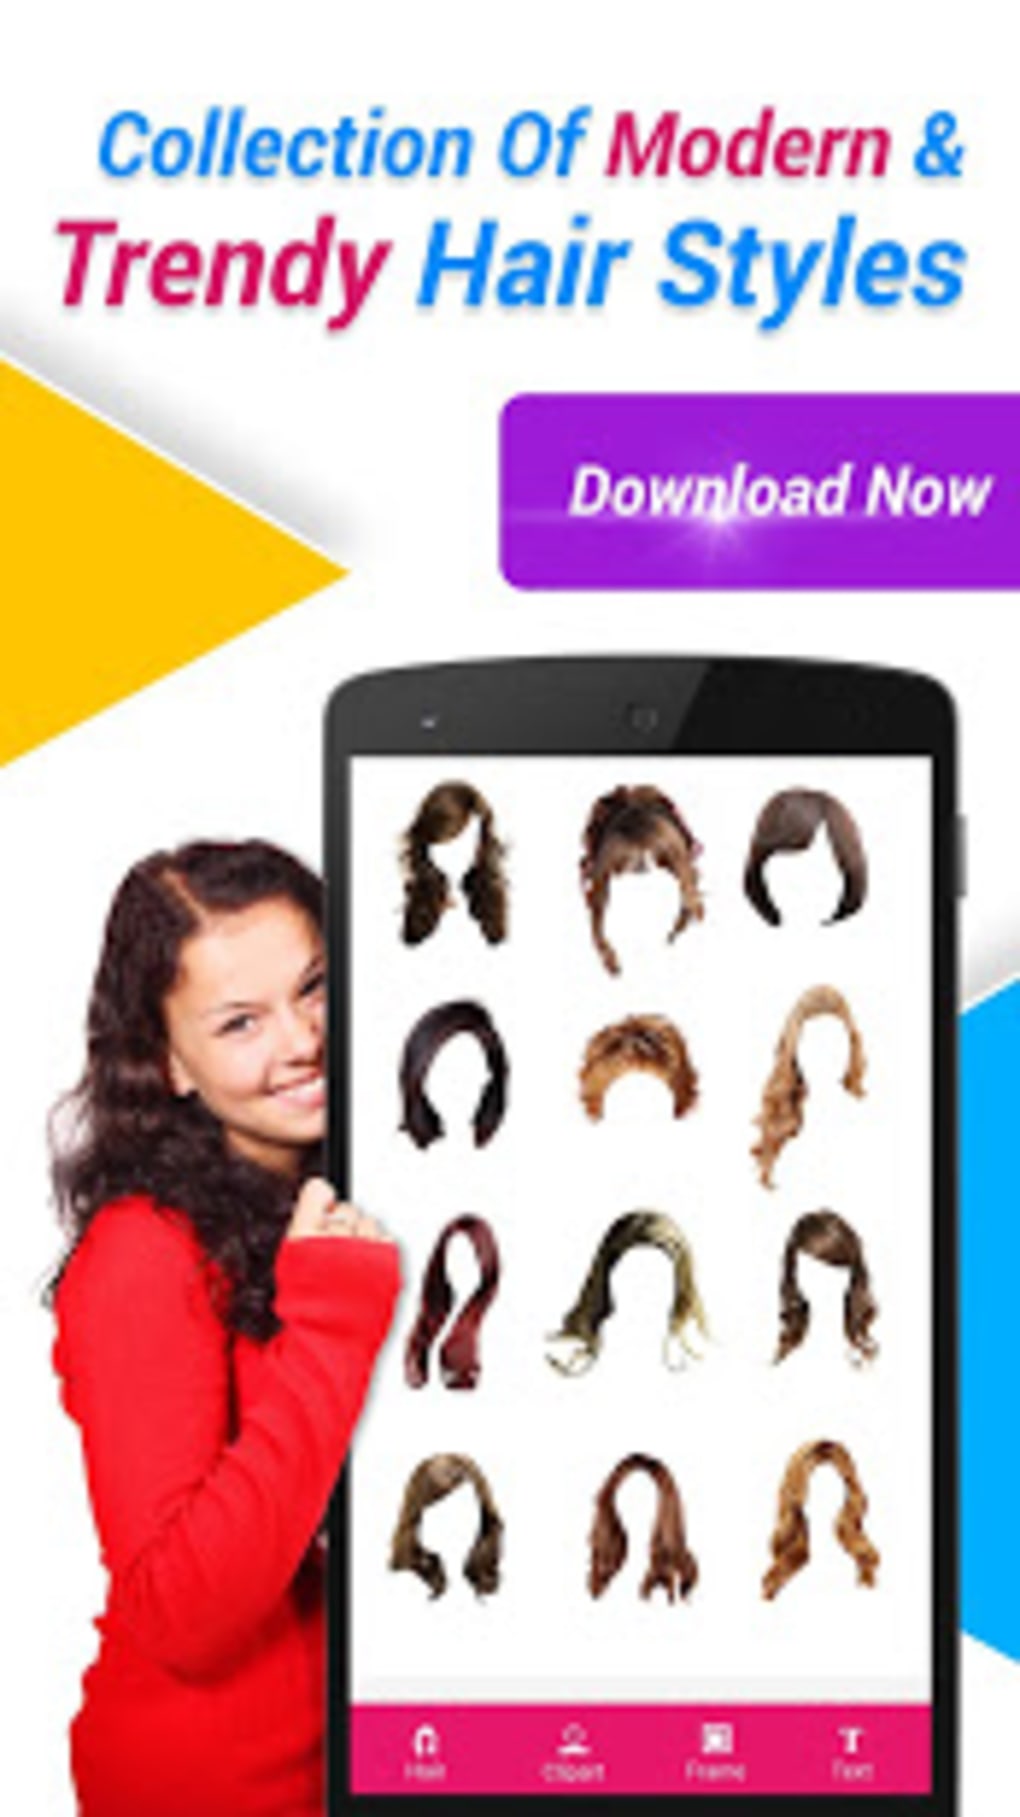 11,615 Woman Download App Images, Stock Photos & Vectors | Shutterstock